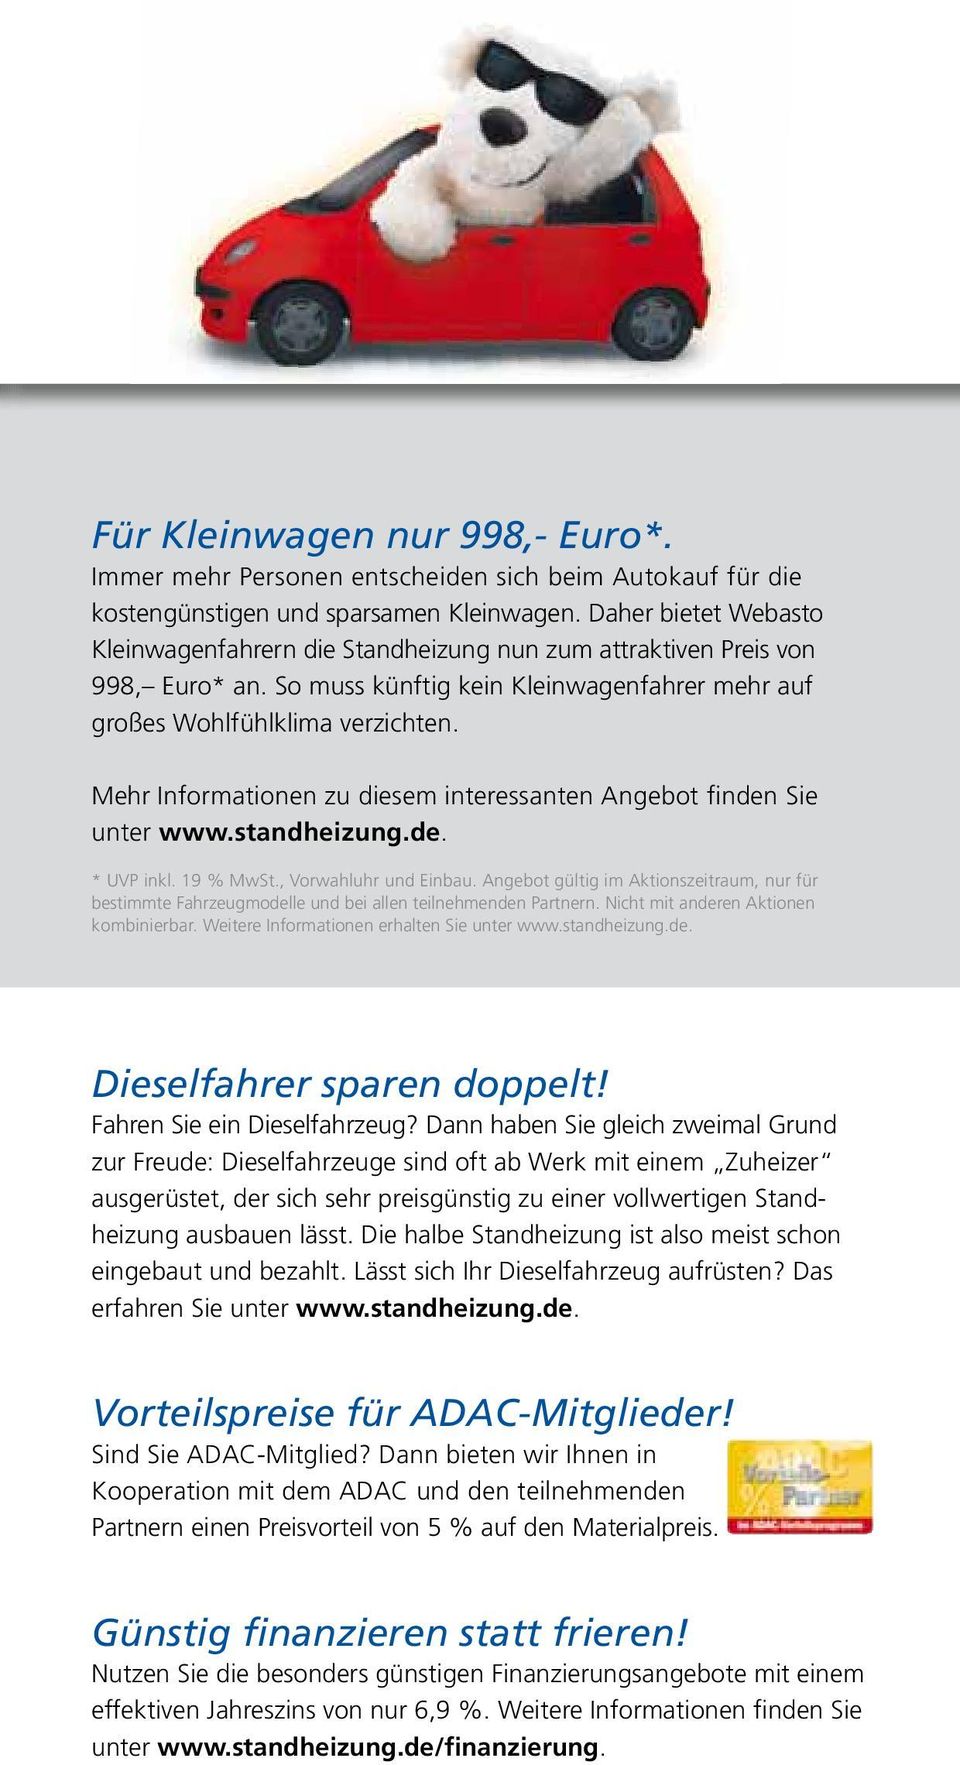 Mehr Informationen zu diesem interessanten Angebot finden Sie unter www.standheizung.de. * UVP inkl. 19 % MwSt., Vorwahluhr und Einbau.